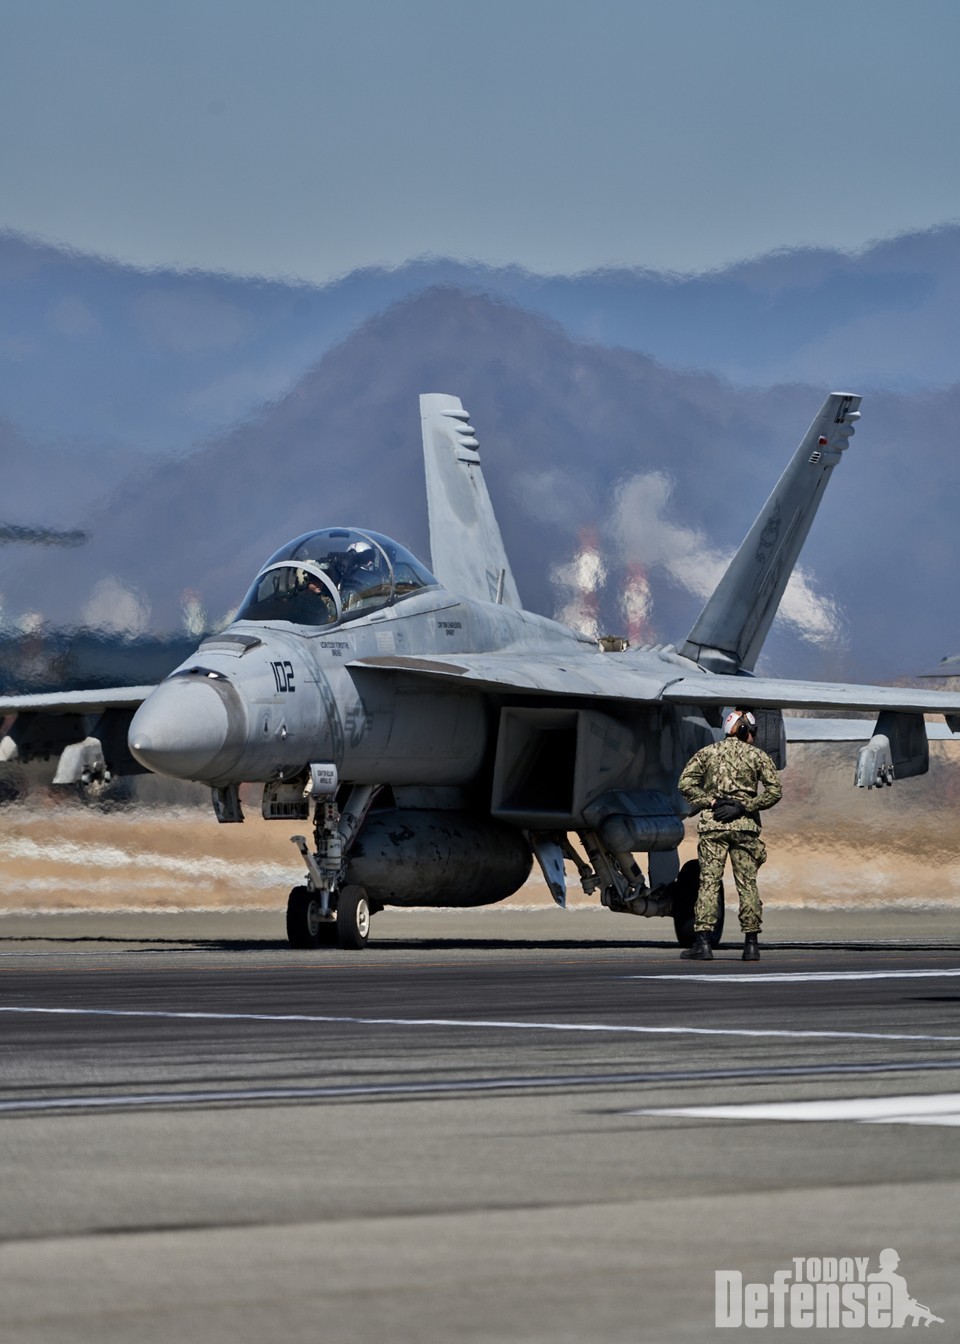 제 5항모비행단 소속 F/A-18E 슈파호넷이 엘레펀트 워크에 참가했다.(사진:U.S.Marine)